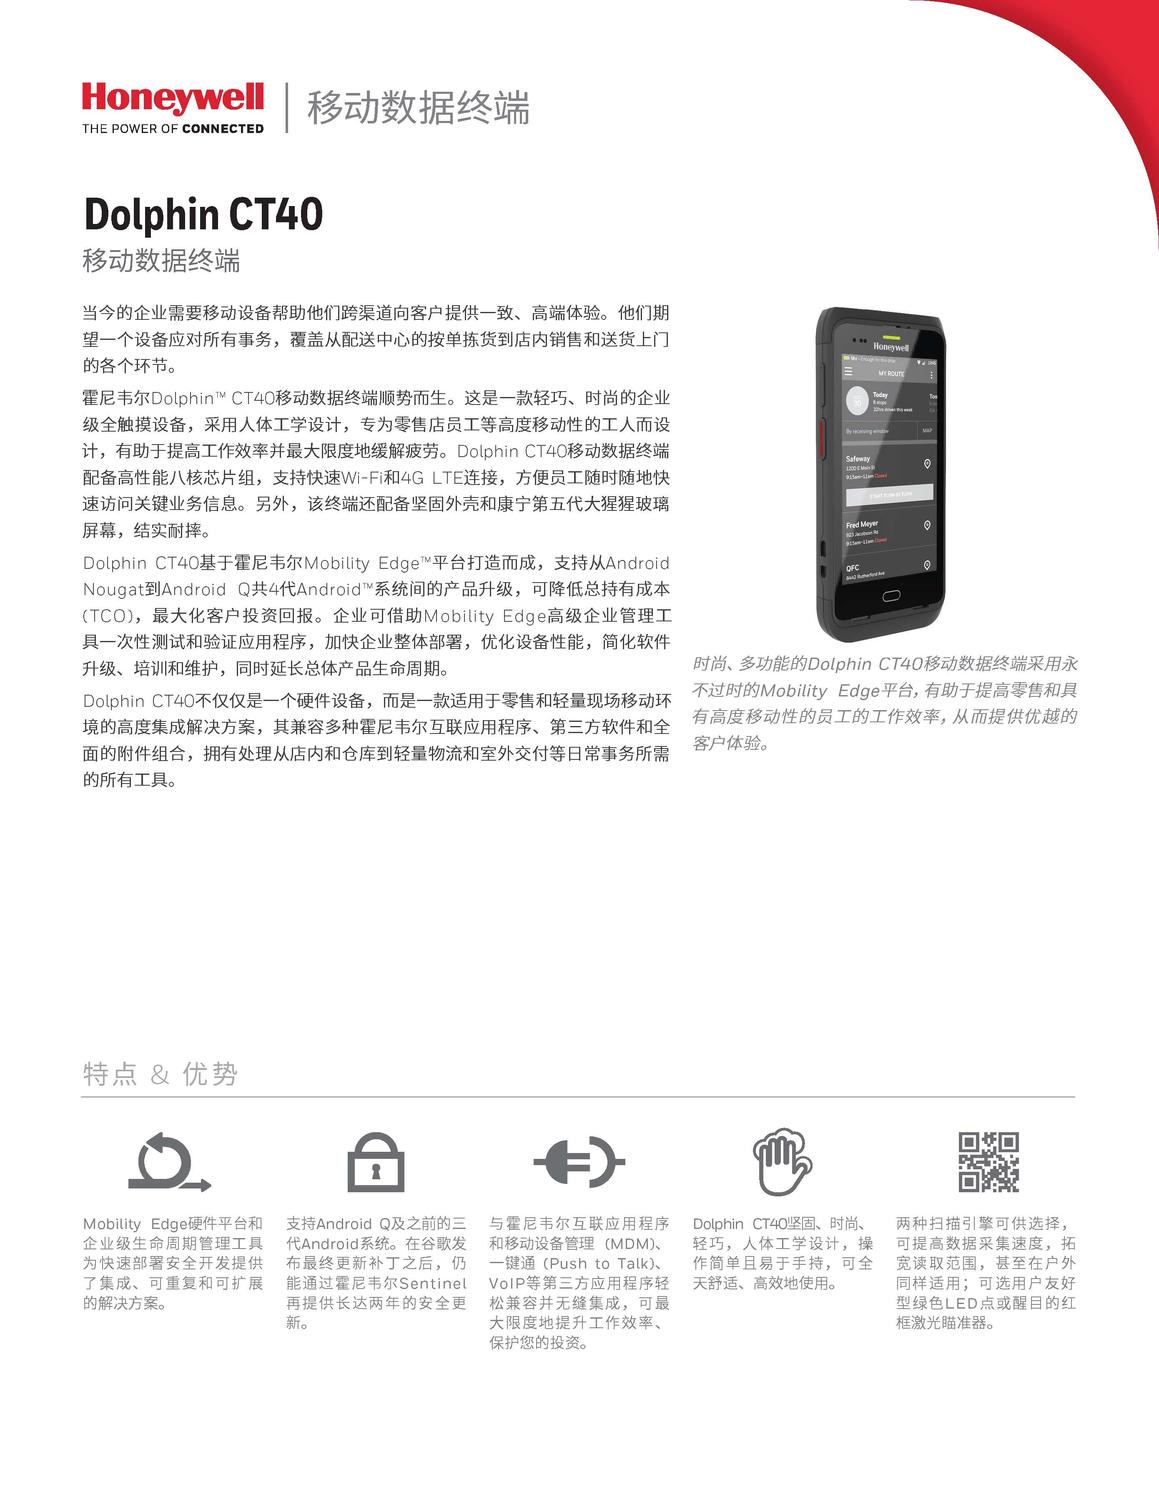 Prod-MComp-Dolphin-CT40-DTS-EN-LTR-0518-A_CN_页面_1.jpg